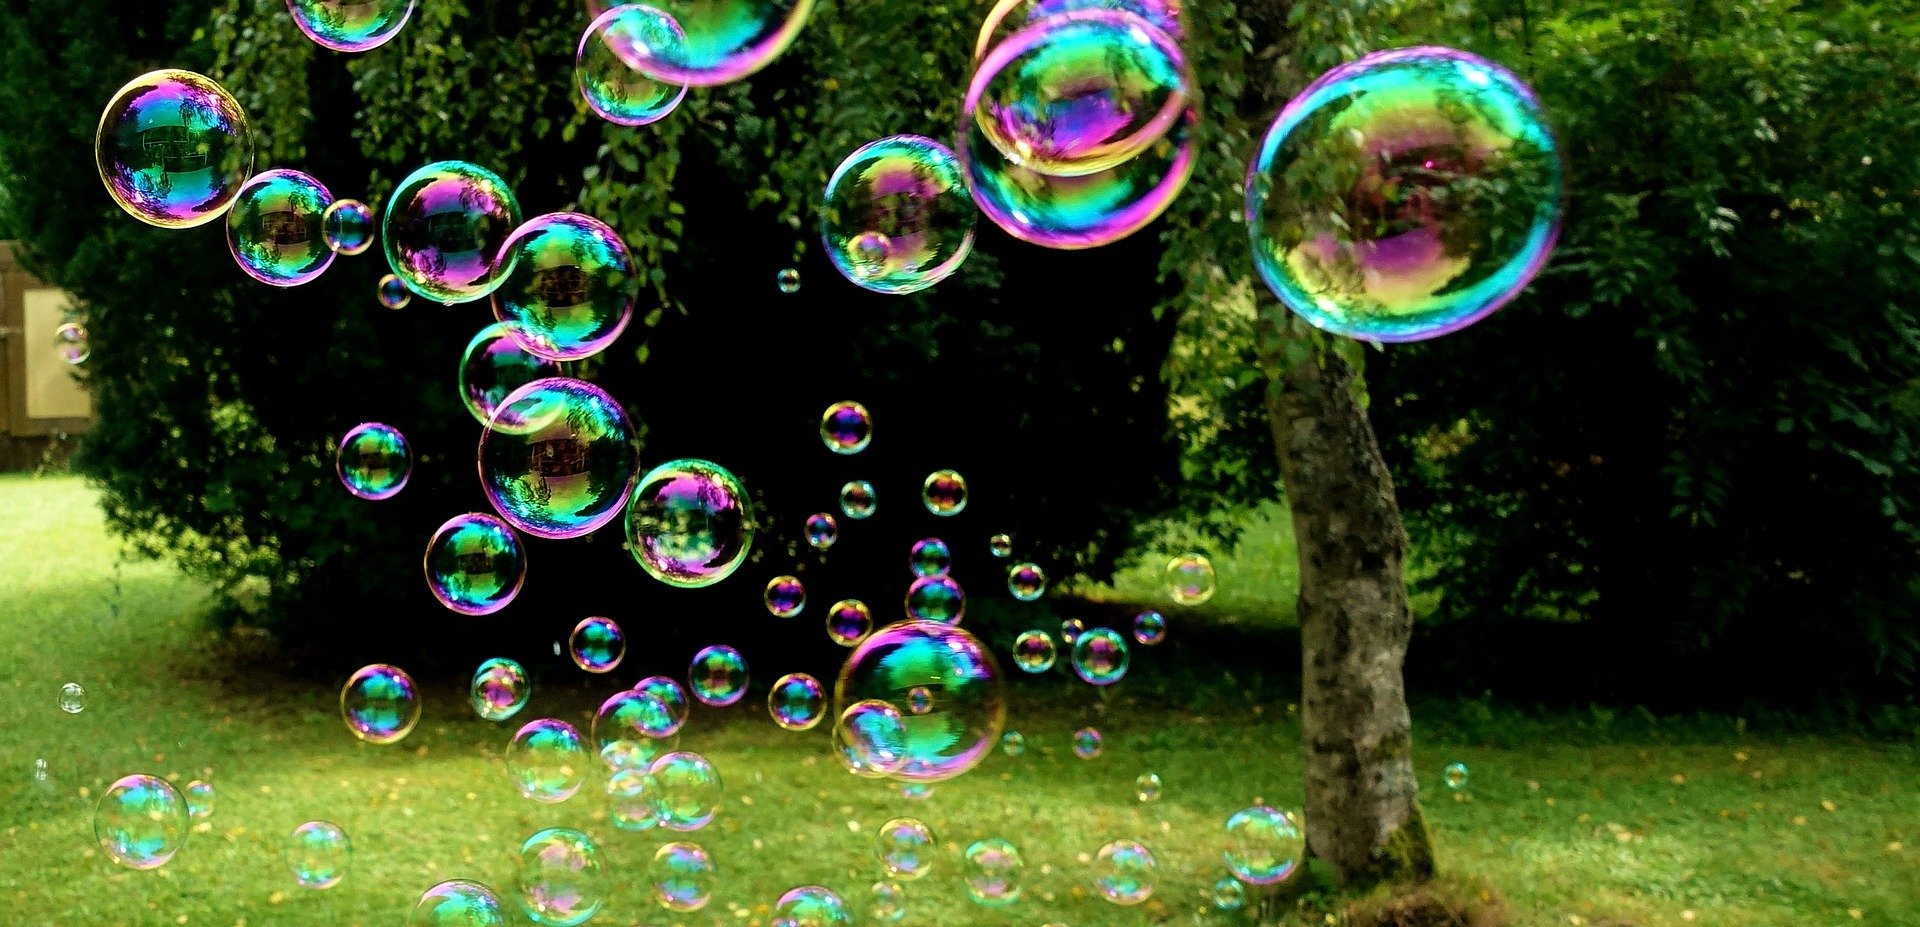 Пузырьковая сортировка или Bubble sort